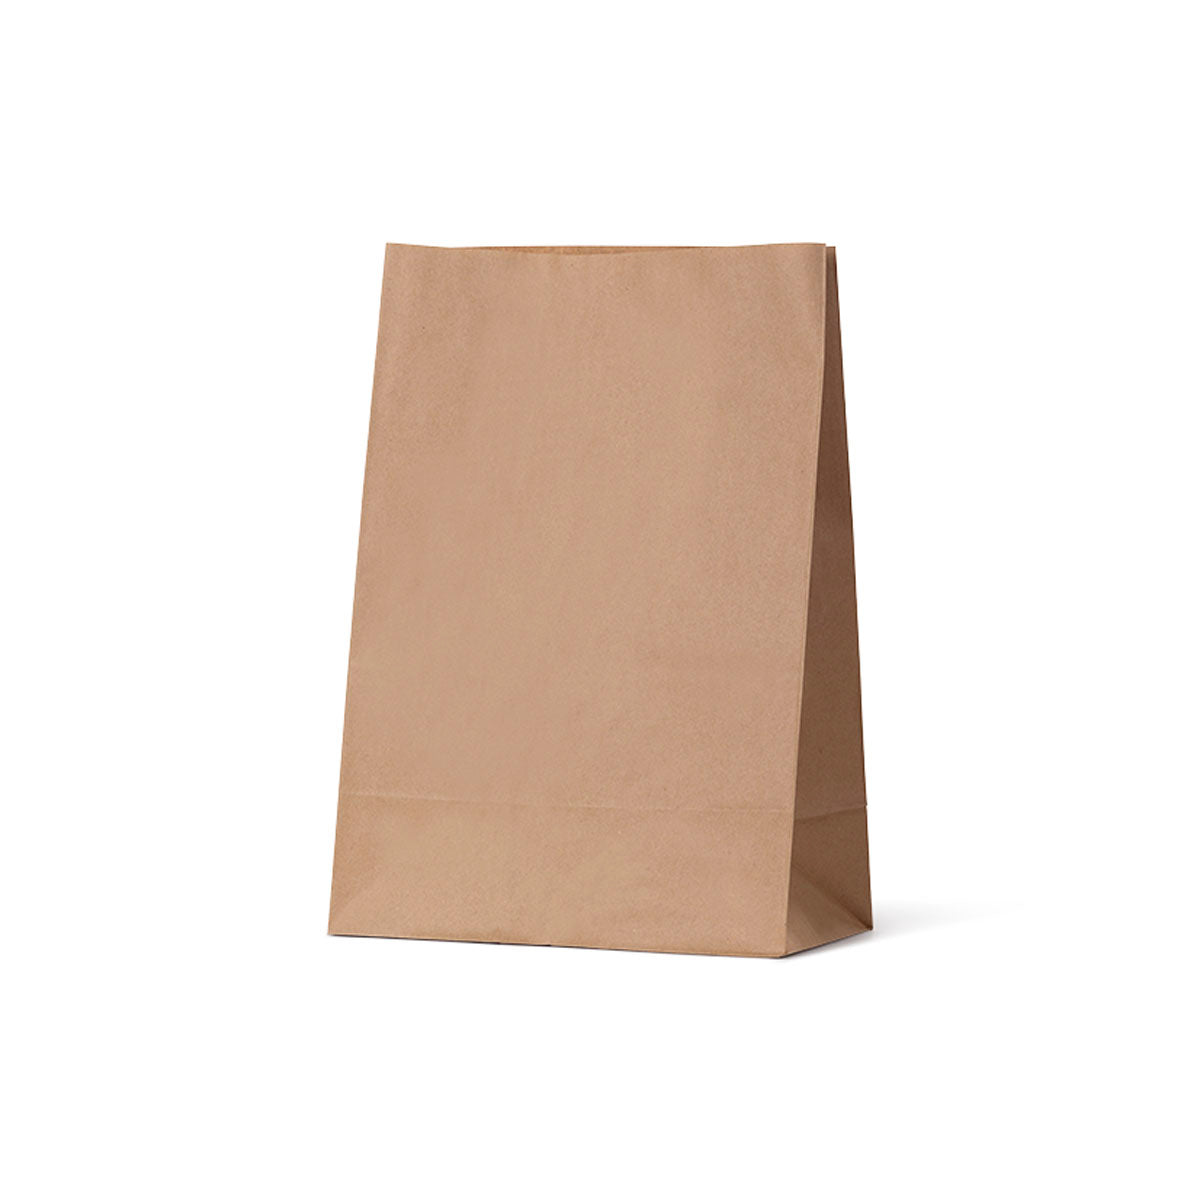 Flat Bottom Supermarket Large Paper Bag